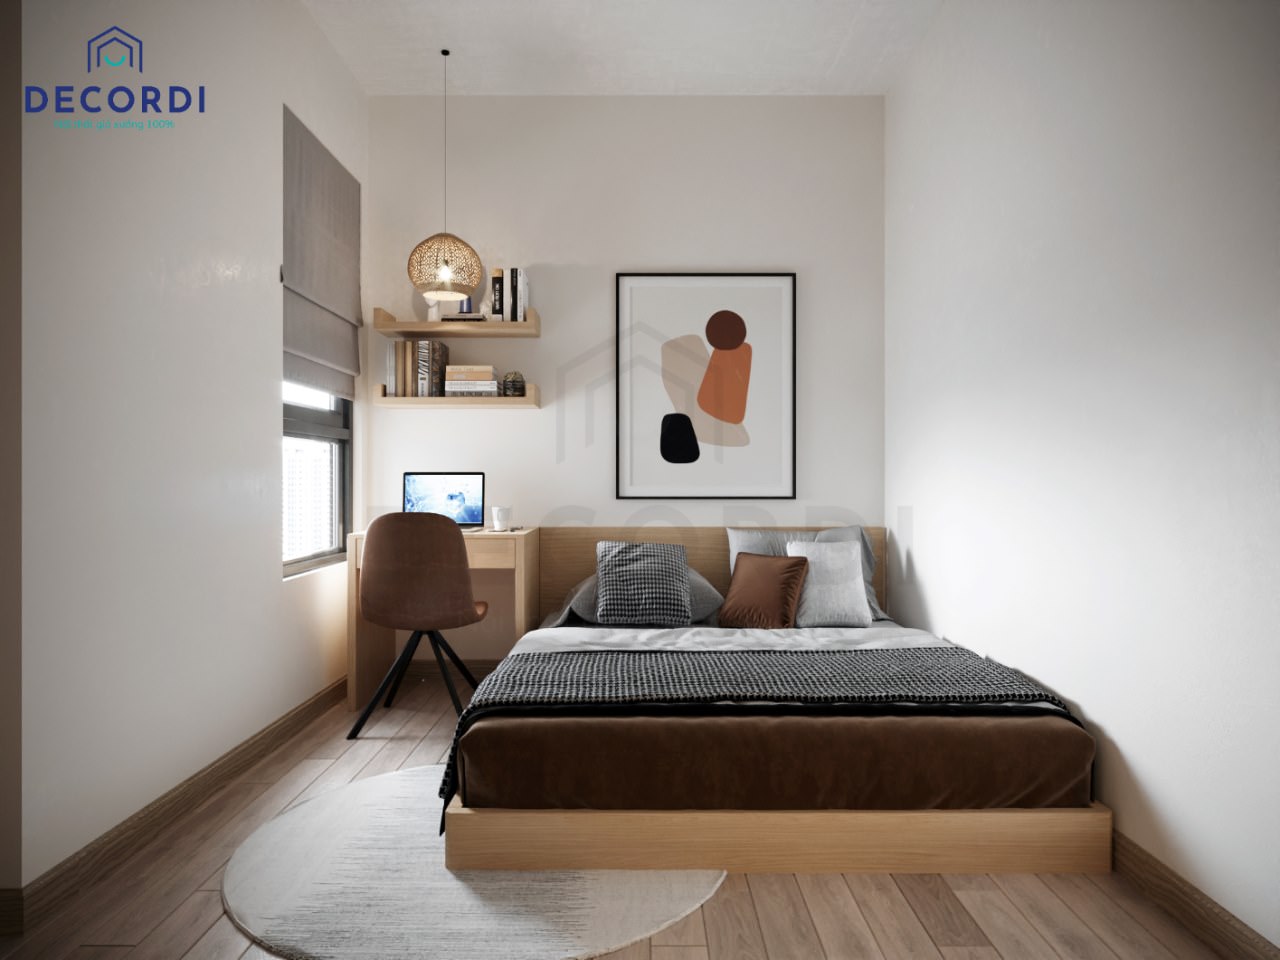 Thiết kế nội thất phòng ngủ nhỏ đơn giản từ gỗ công nghiệp